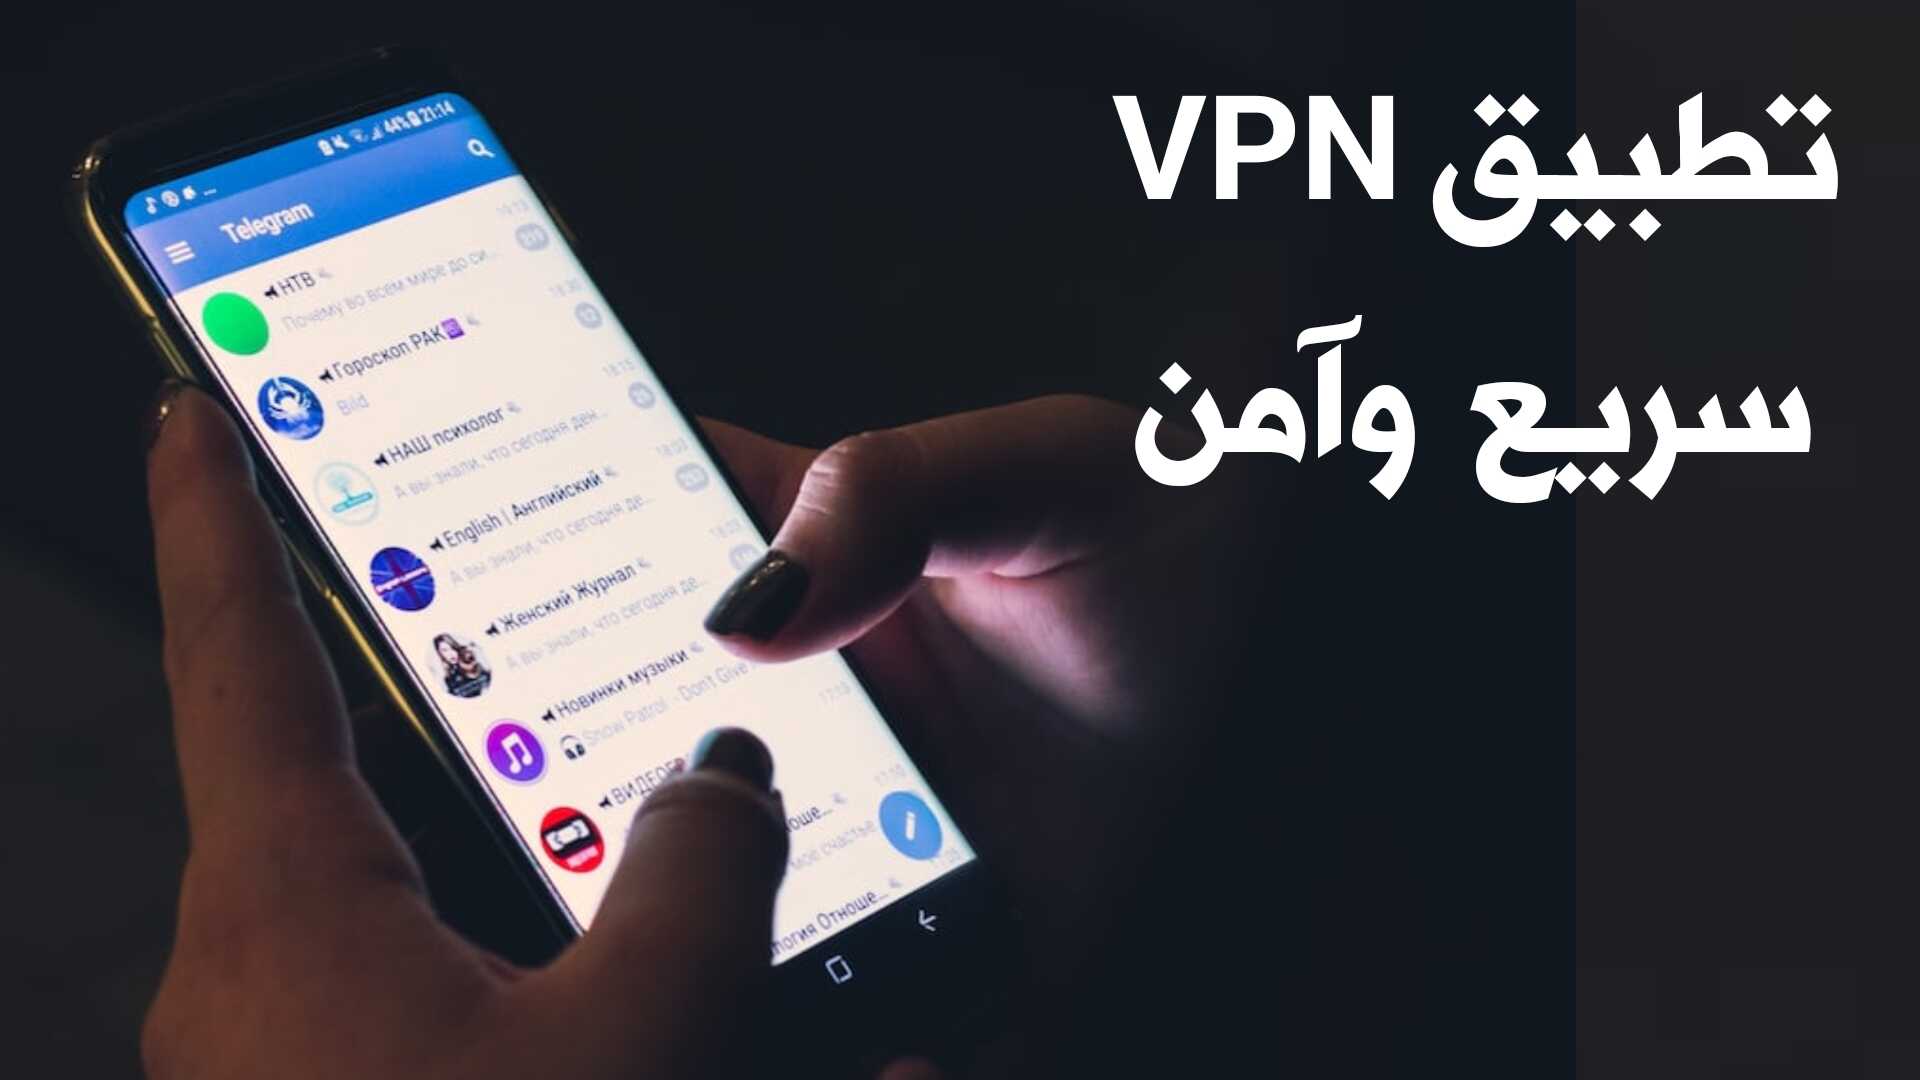 تطبيق VPN سريع وآمن مع 5 ميزات لا تجدها في أي تطبيق آخر